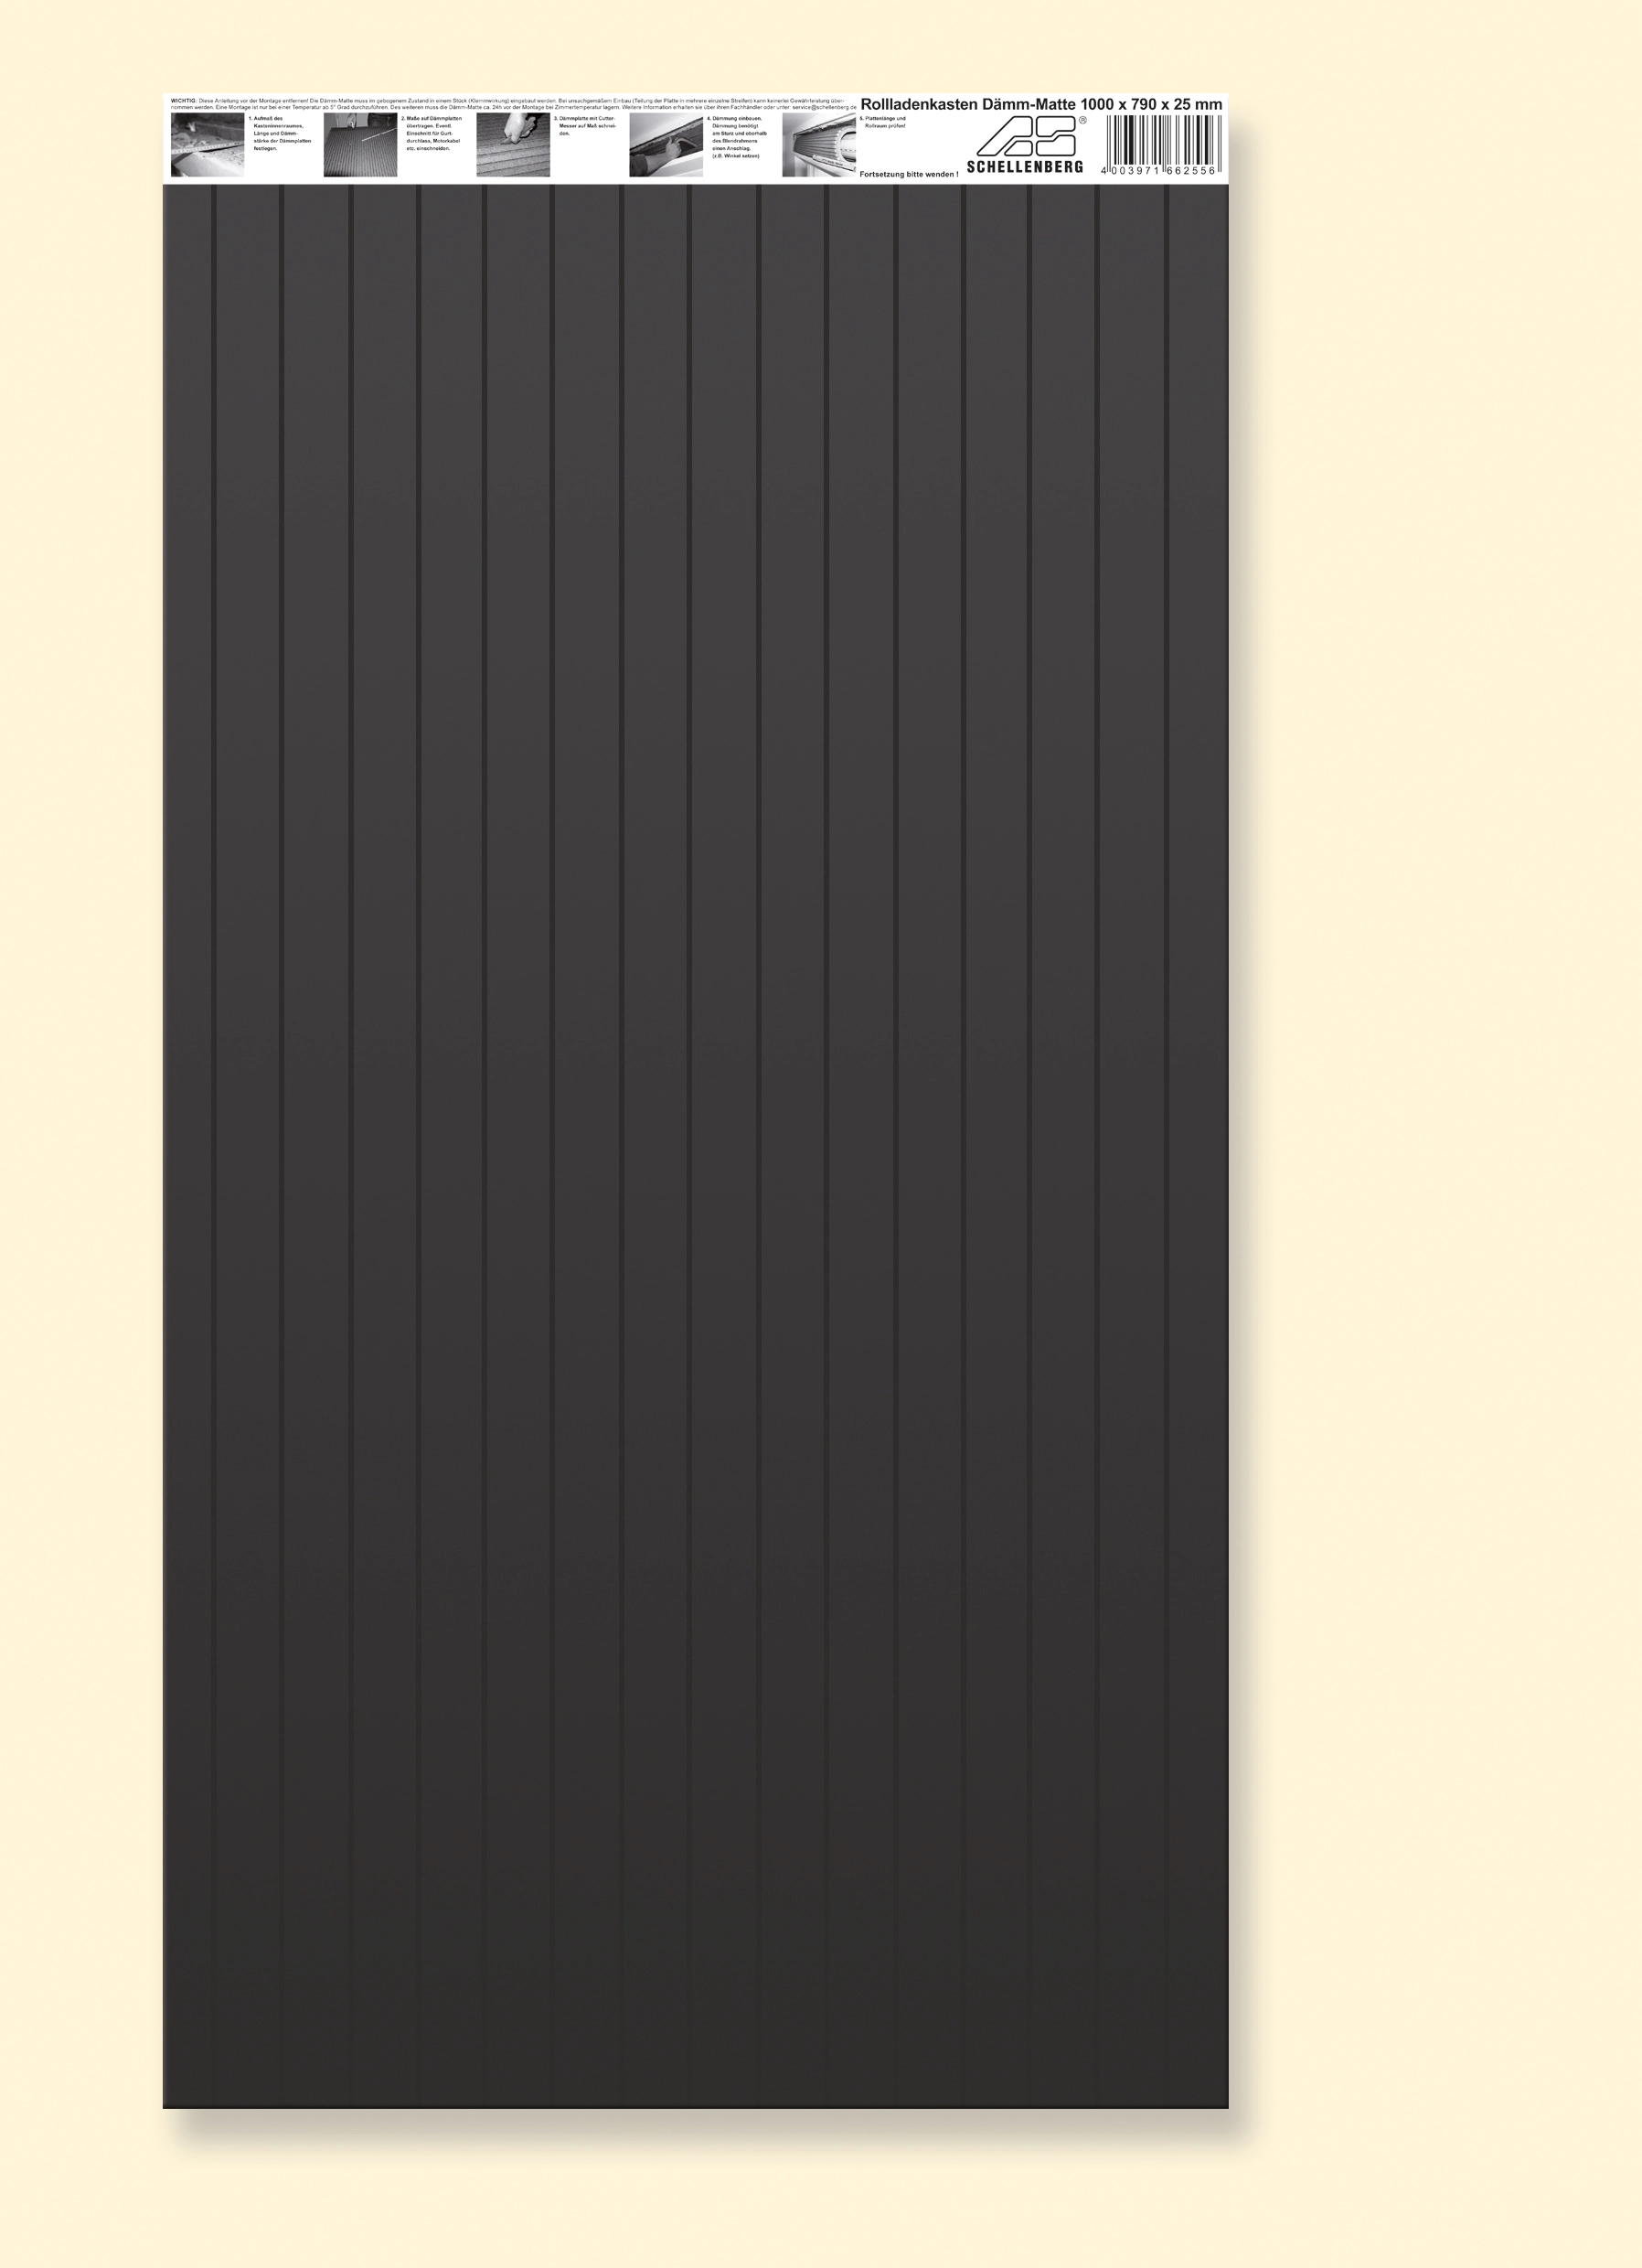 Rollladenkasten Dämmung 2,5 cm Stärke 100 cm x 79 cm